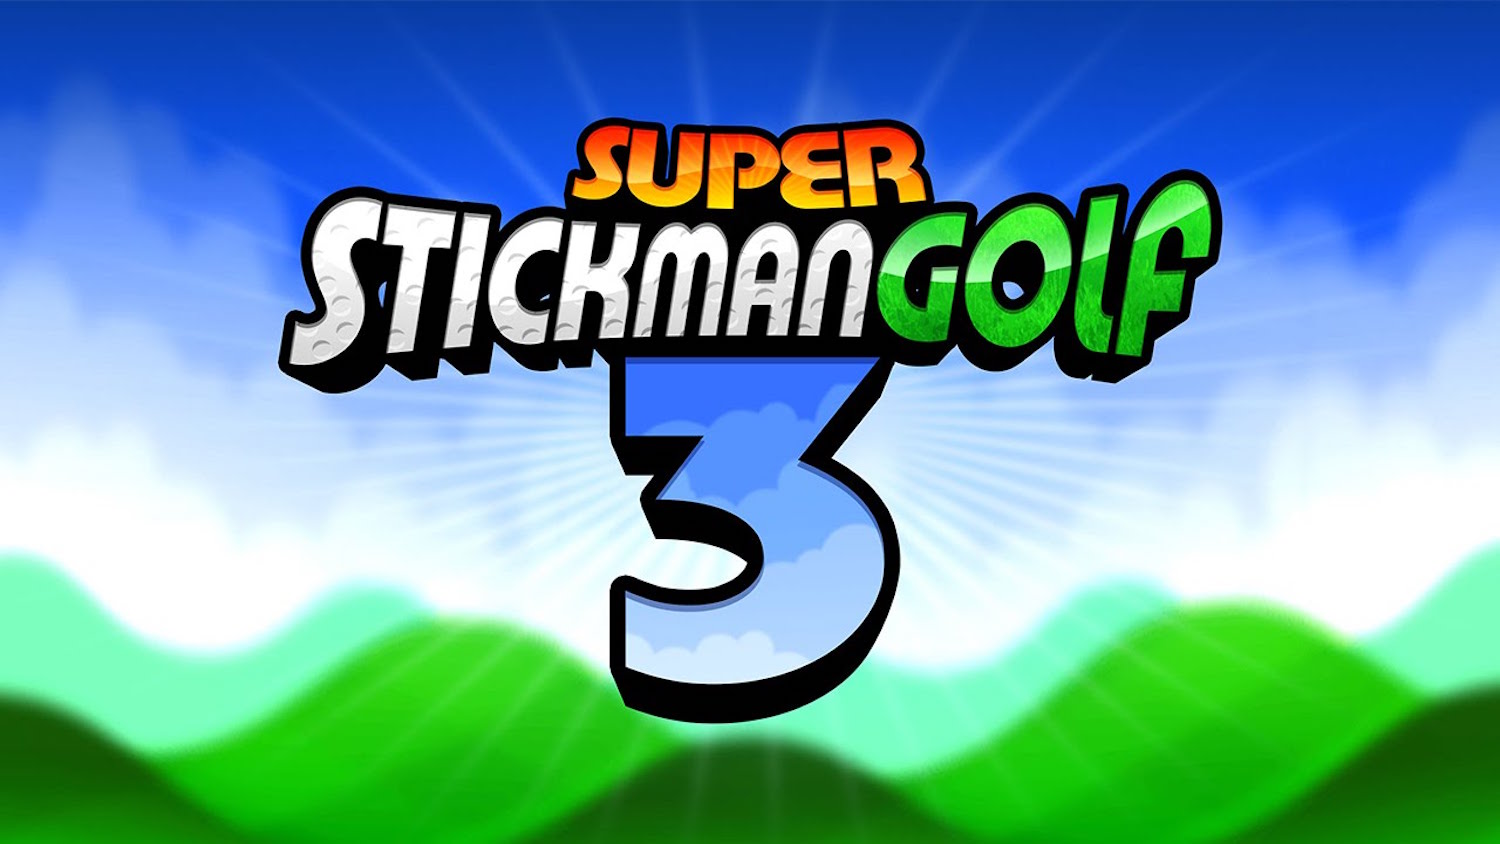 Super Stickman Golf 3 — гольфомания продолжается